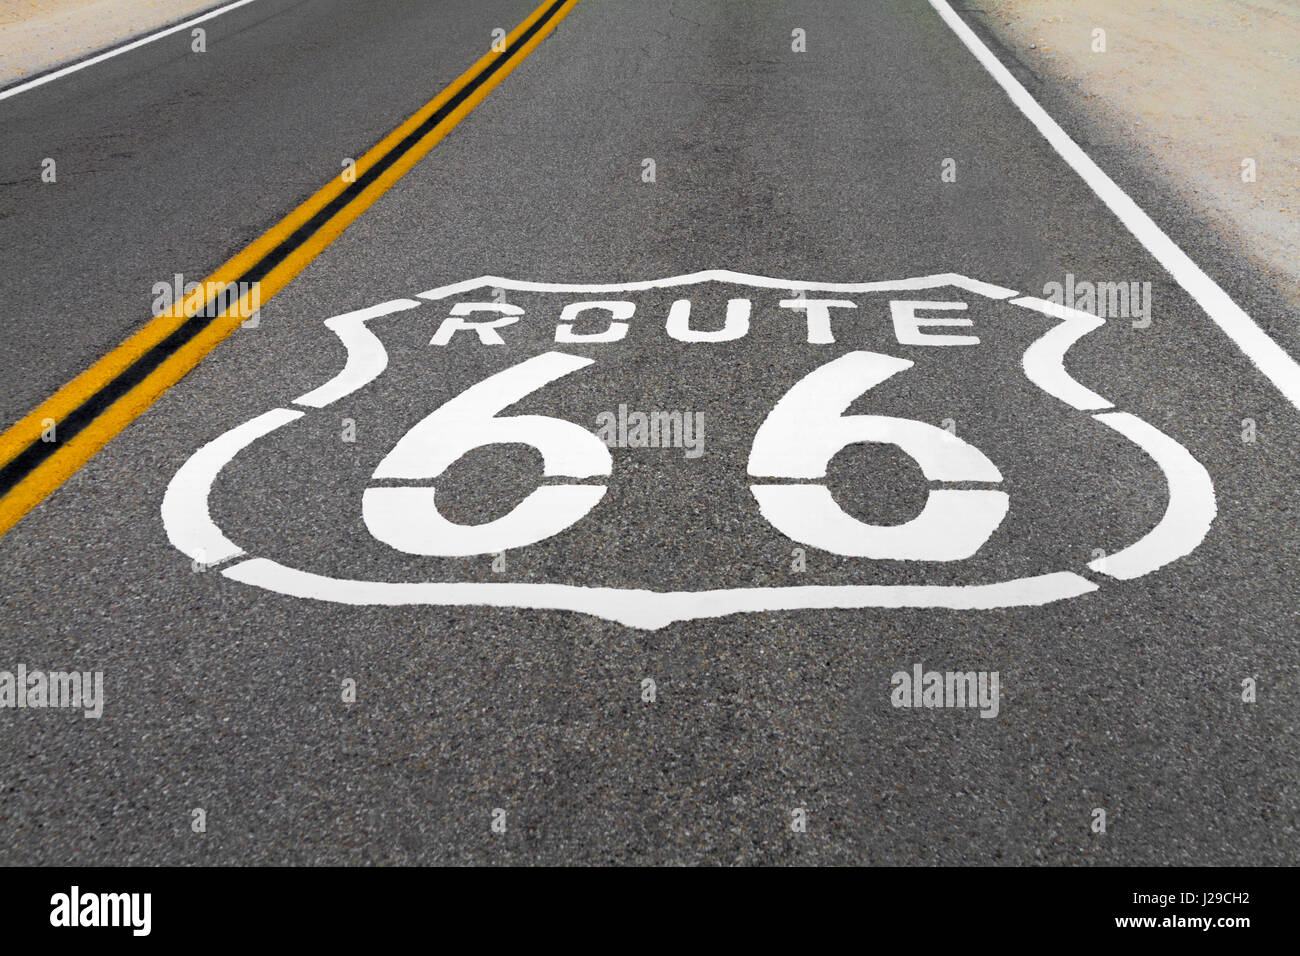 Le logo Route 66 sur le sol de la route avec deux lignes jaunes. Banque D'Images